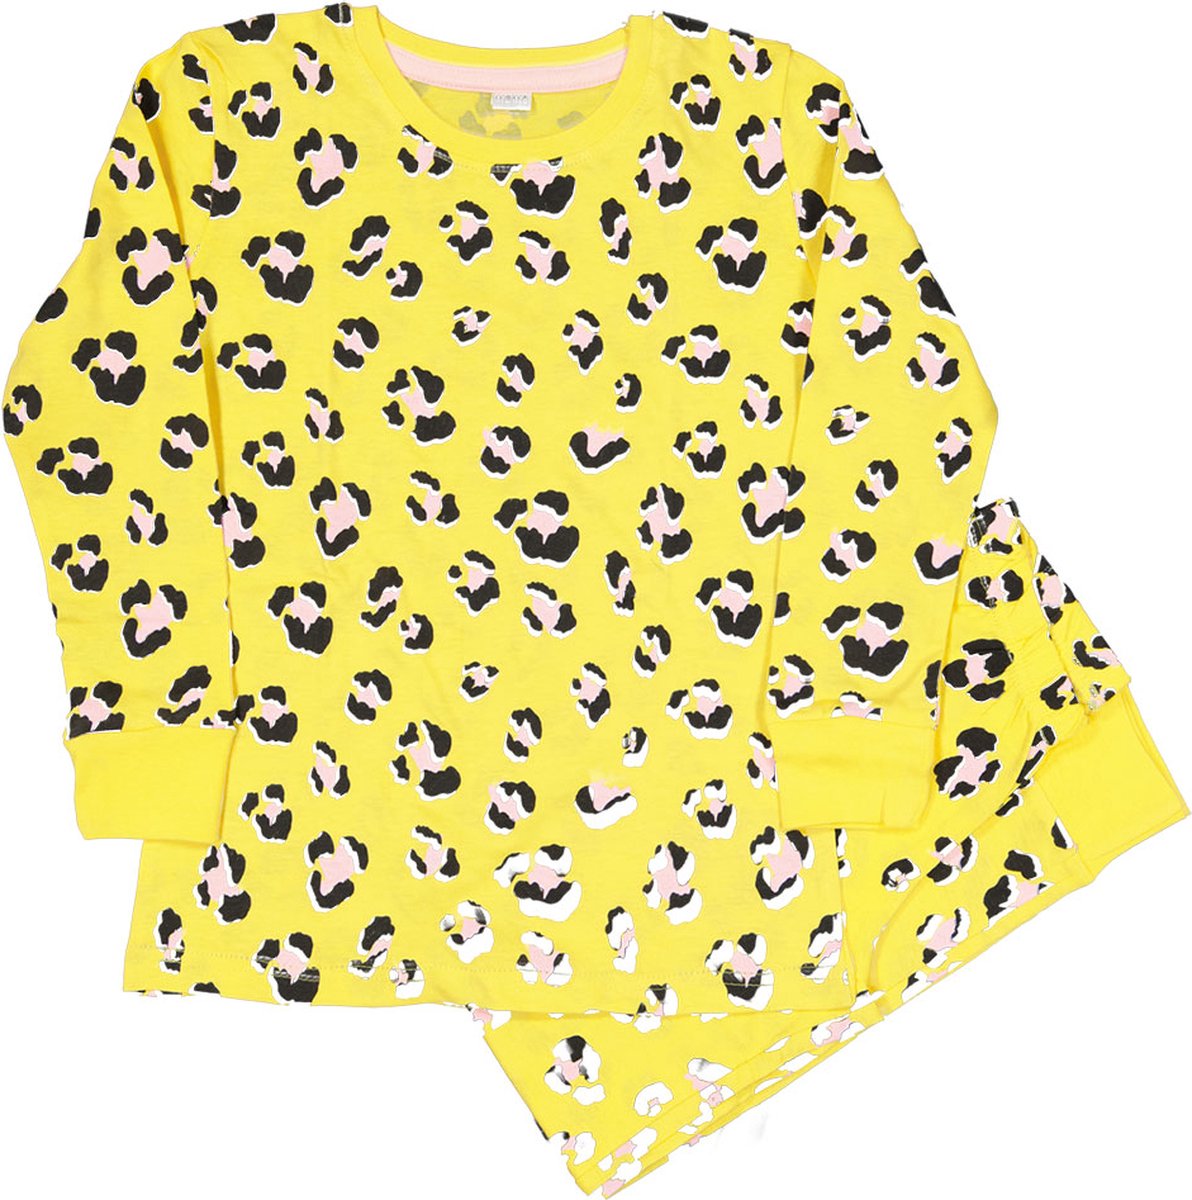 Zeeman kinder meisjes pyjama set - geel - maat 110/116